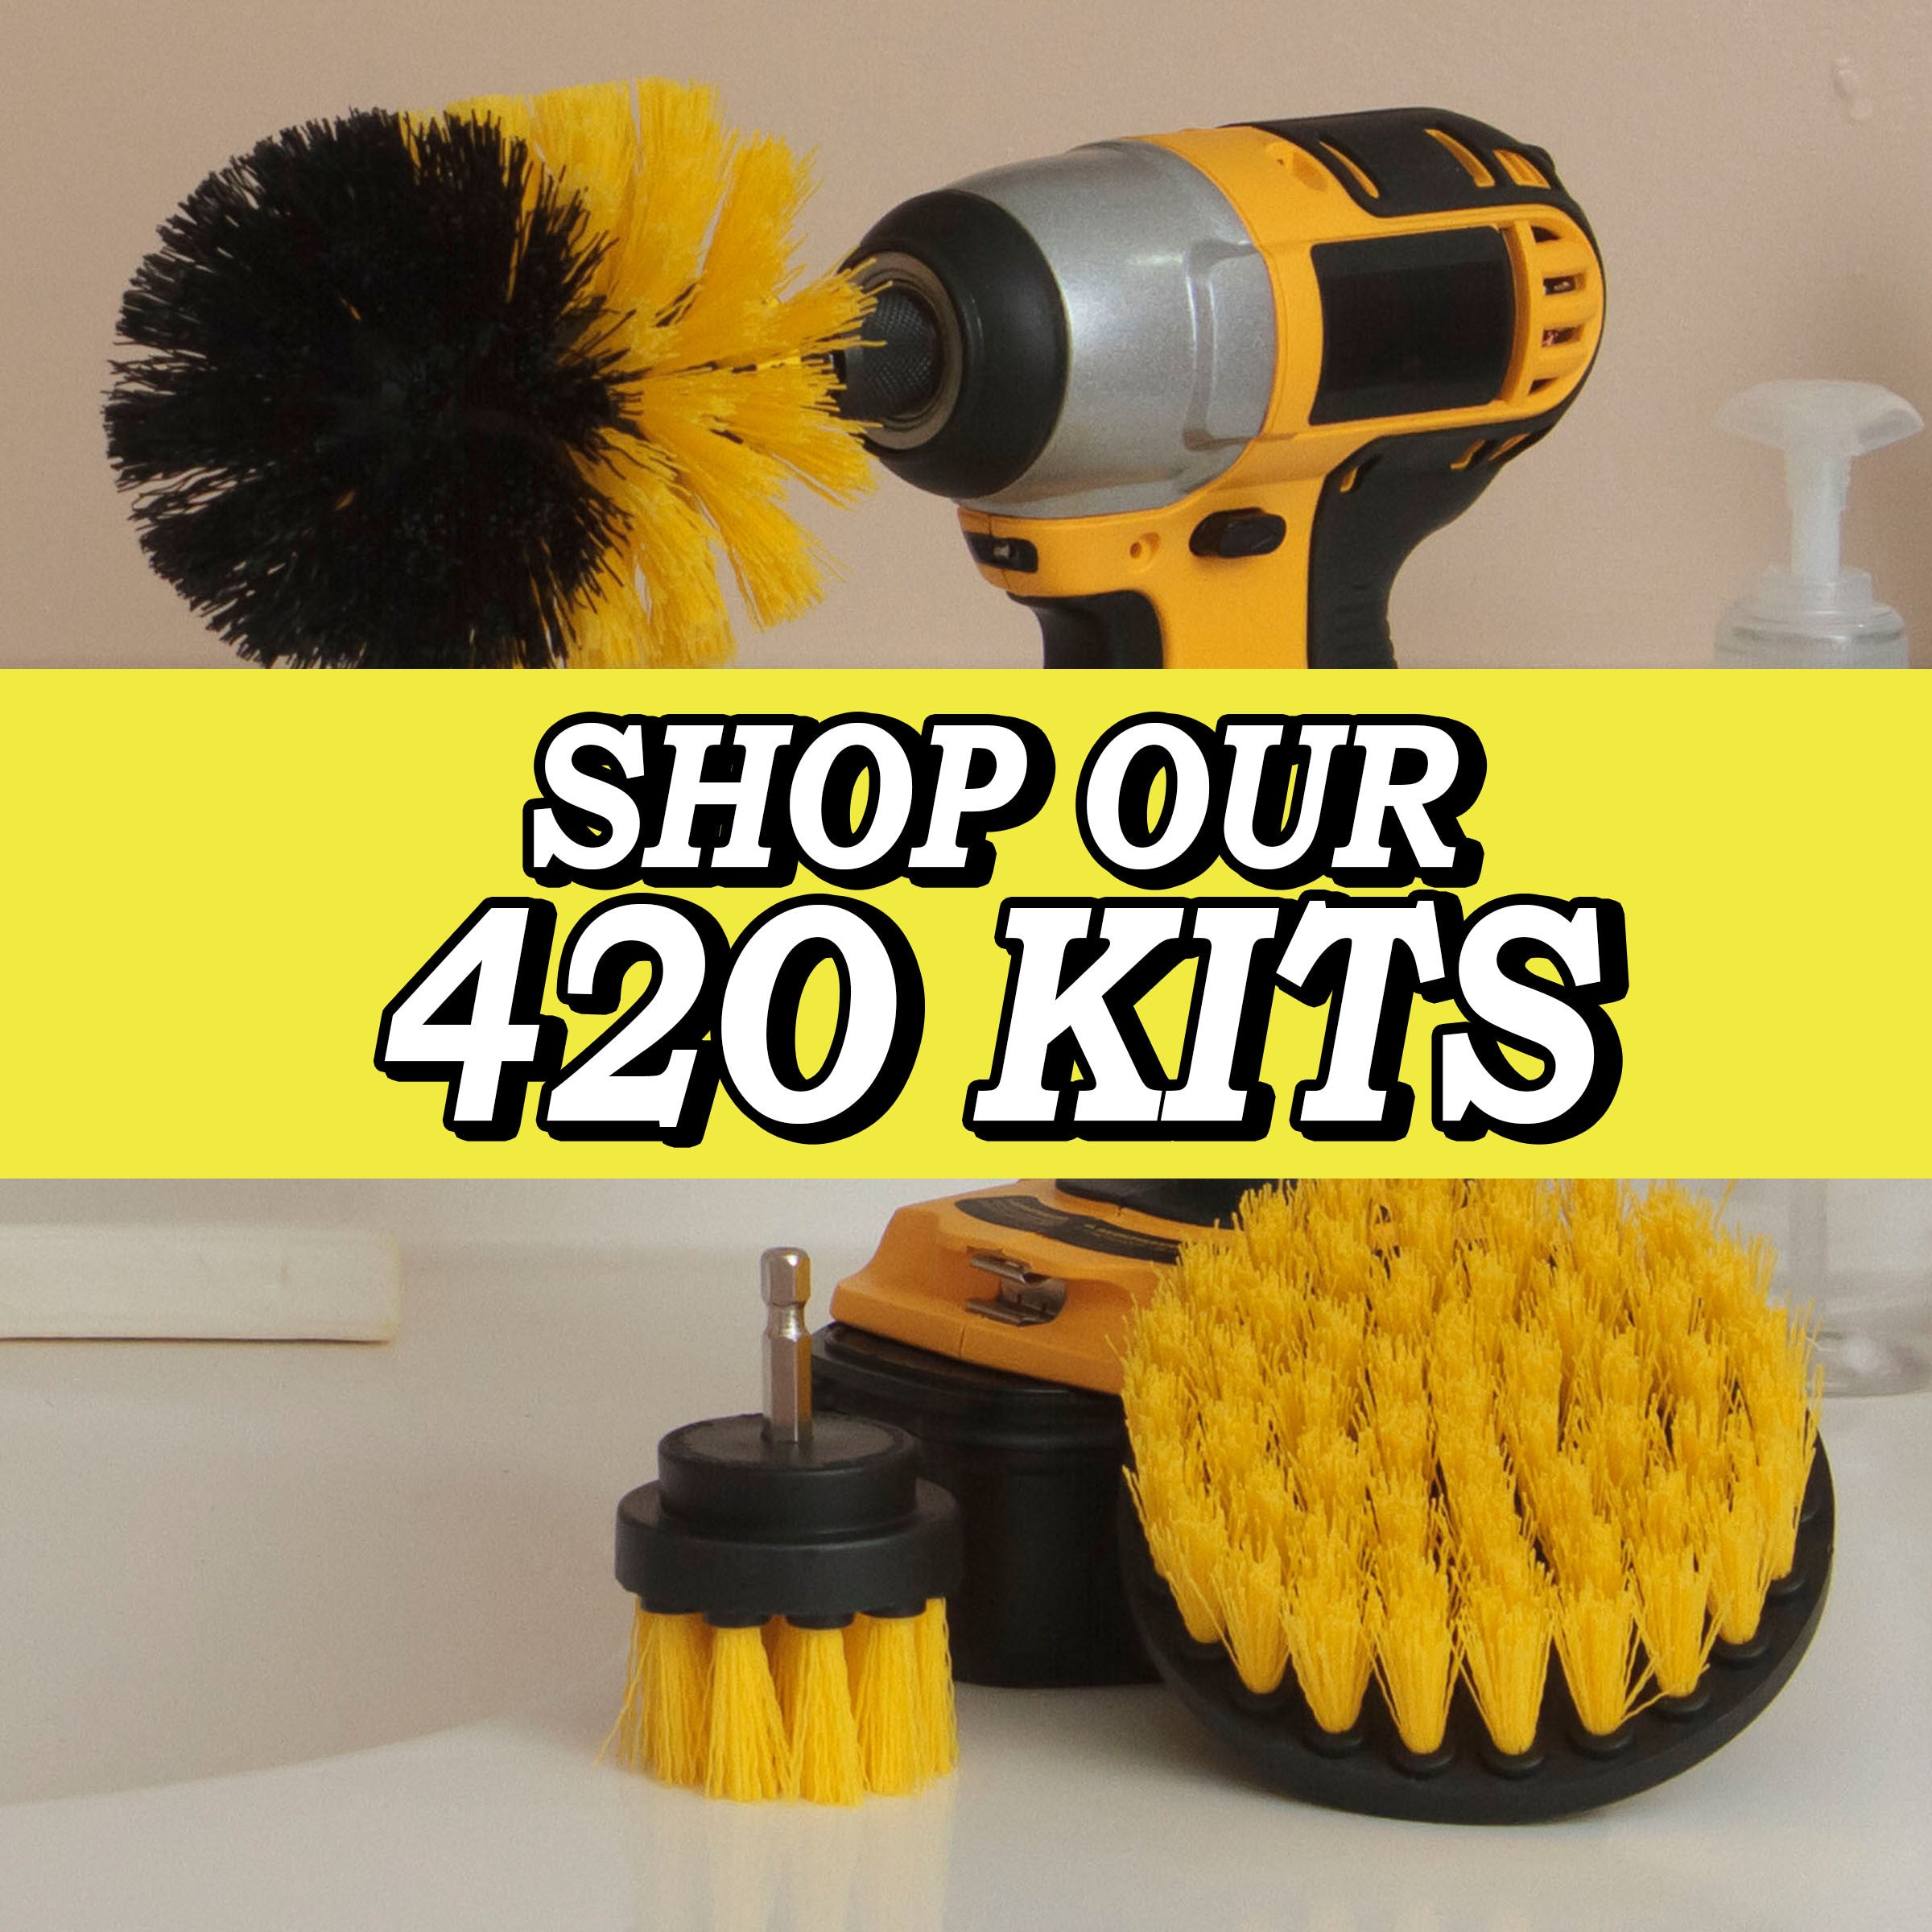 42O Kits – Drillbrush